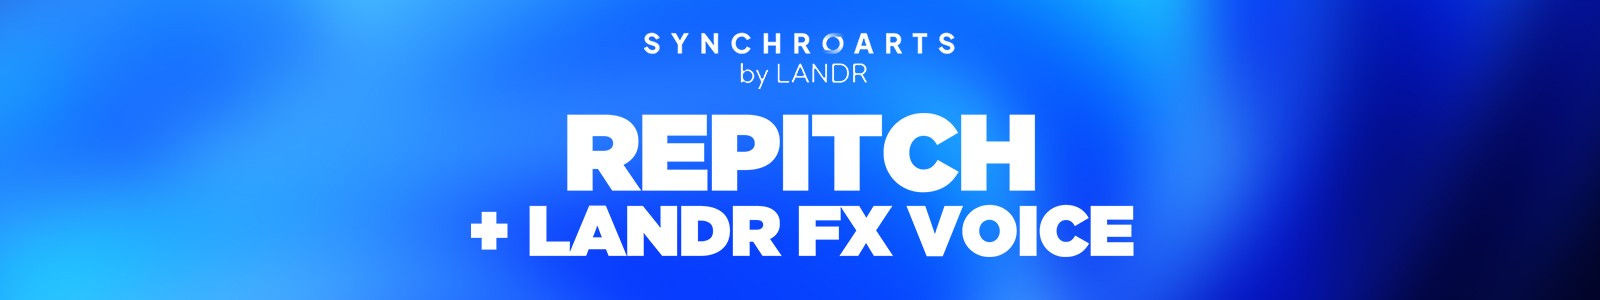 Synchro Arts Repitch Elements + LANDR FX Voice